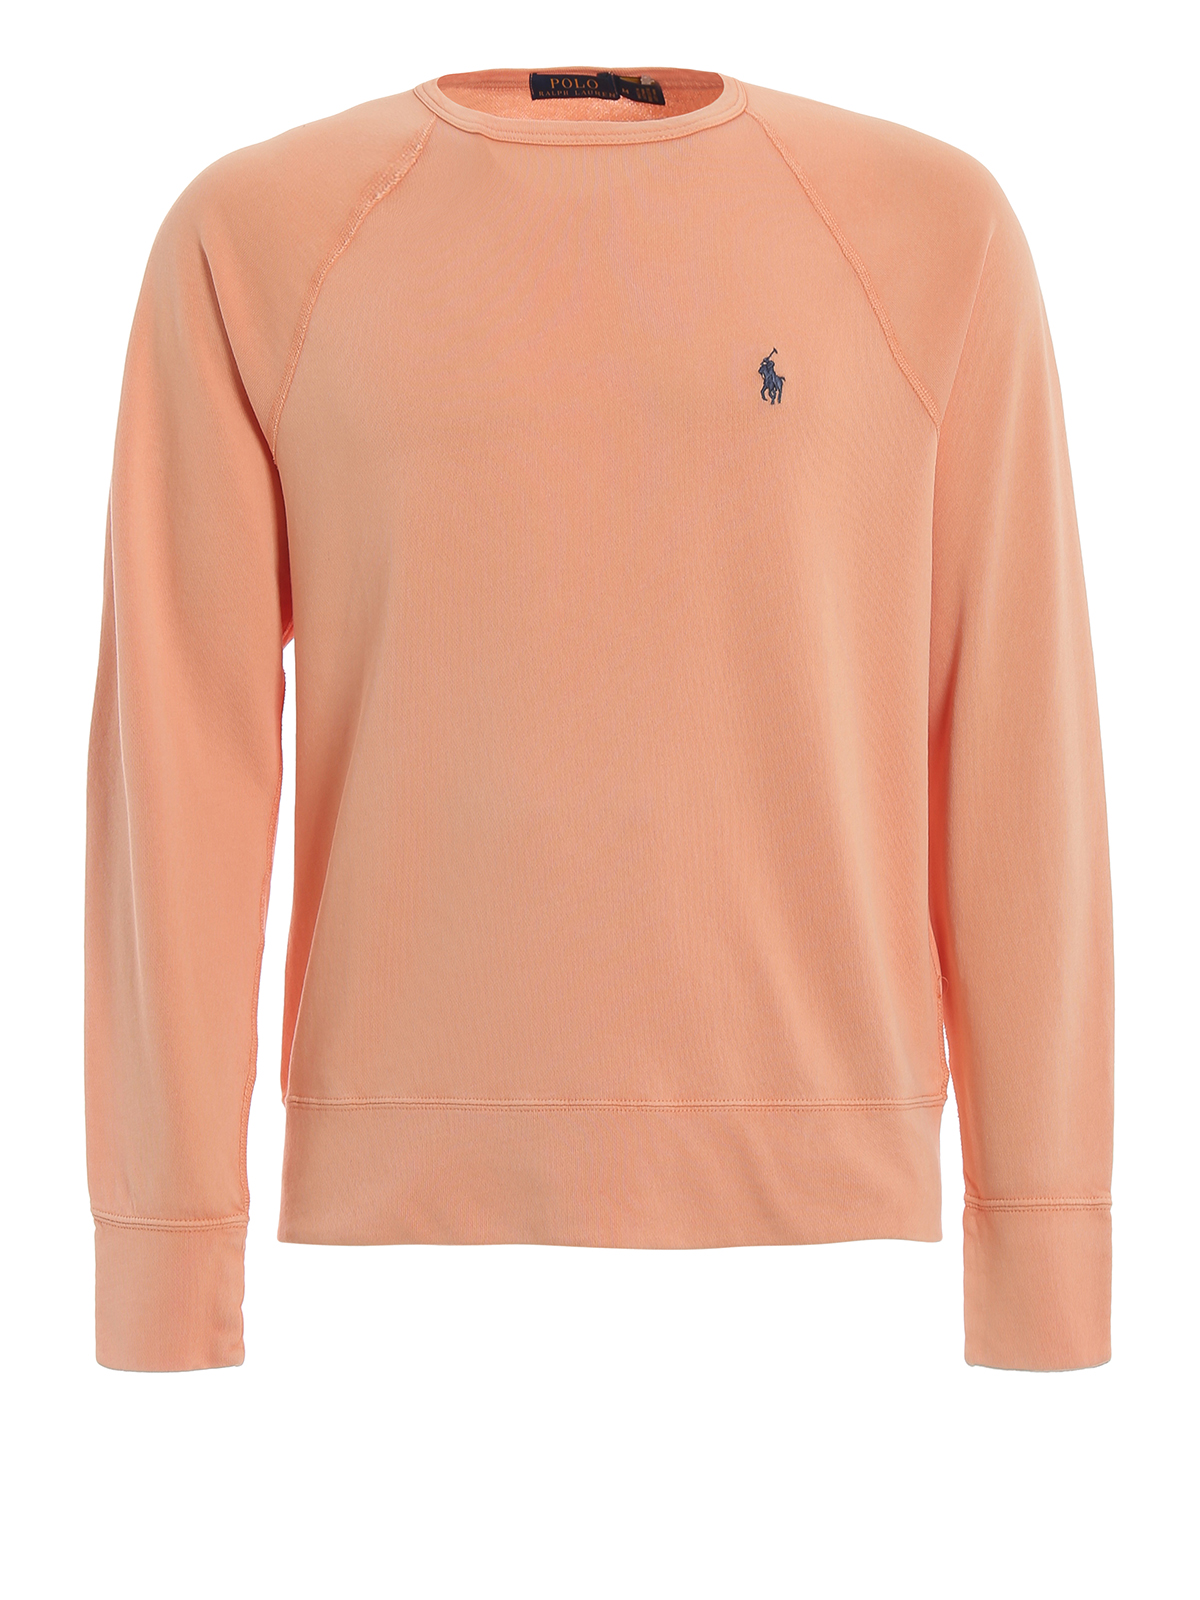 ralph lauren orange sweatshirt